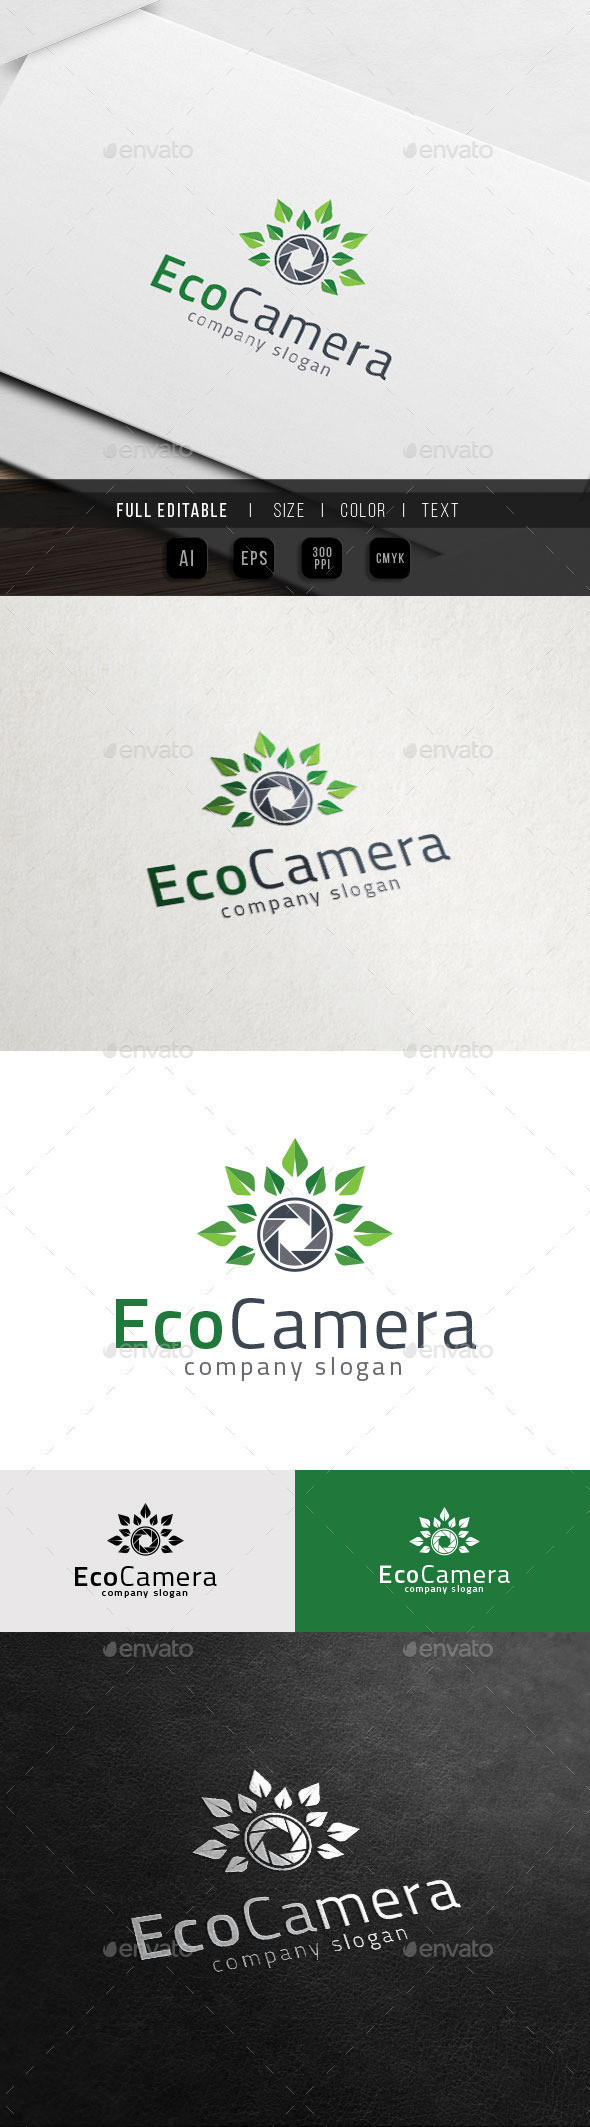 Eco camera   preview